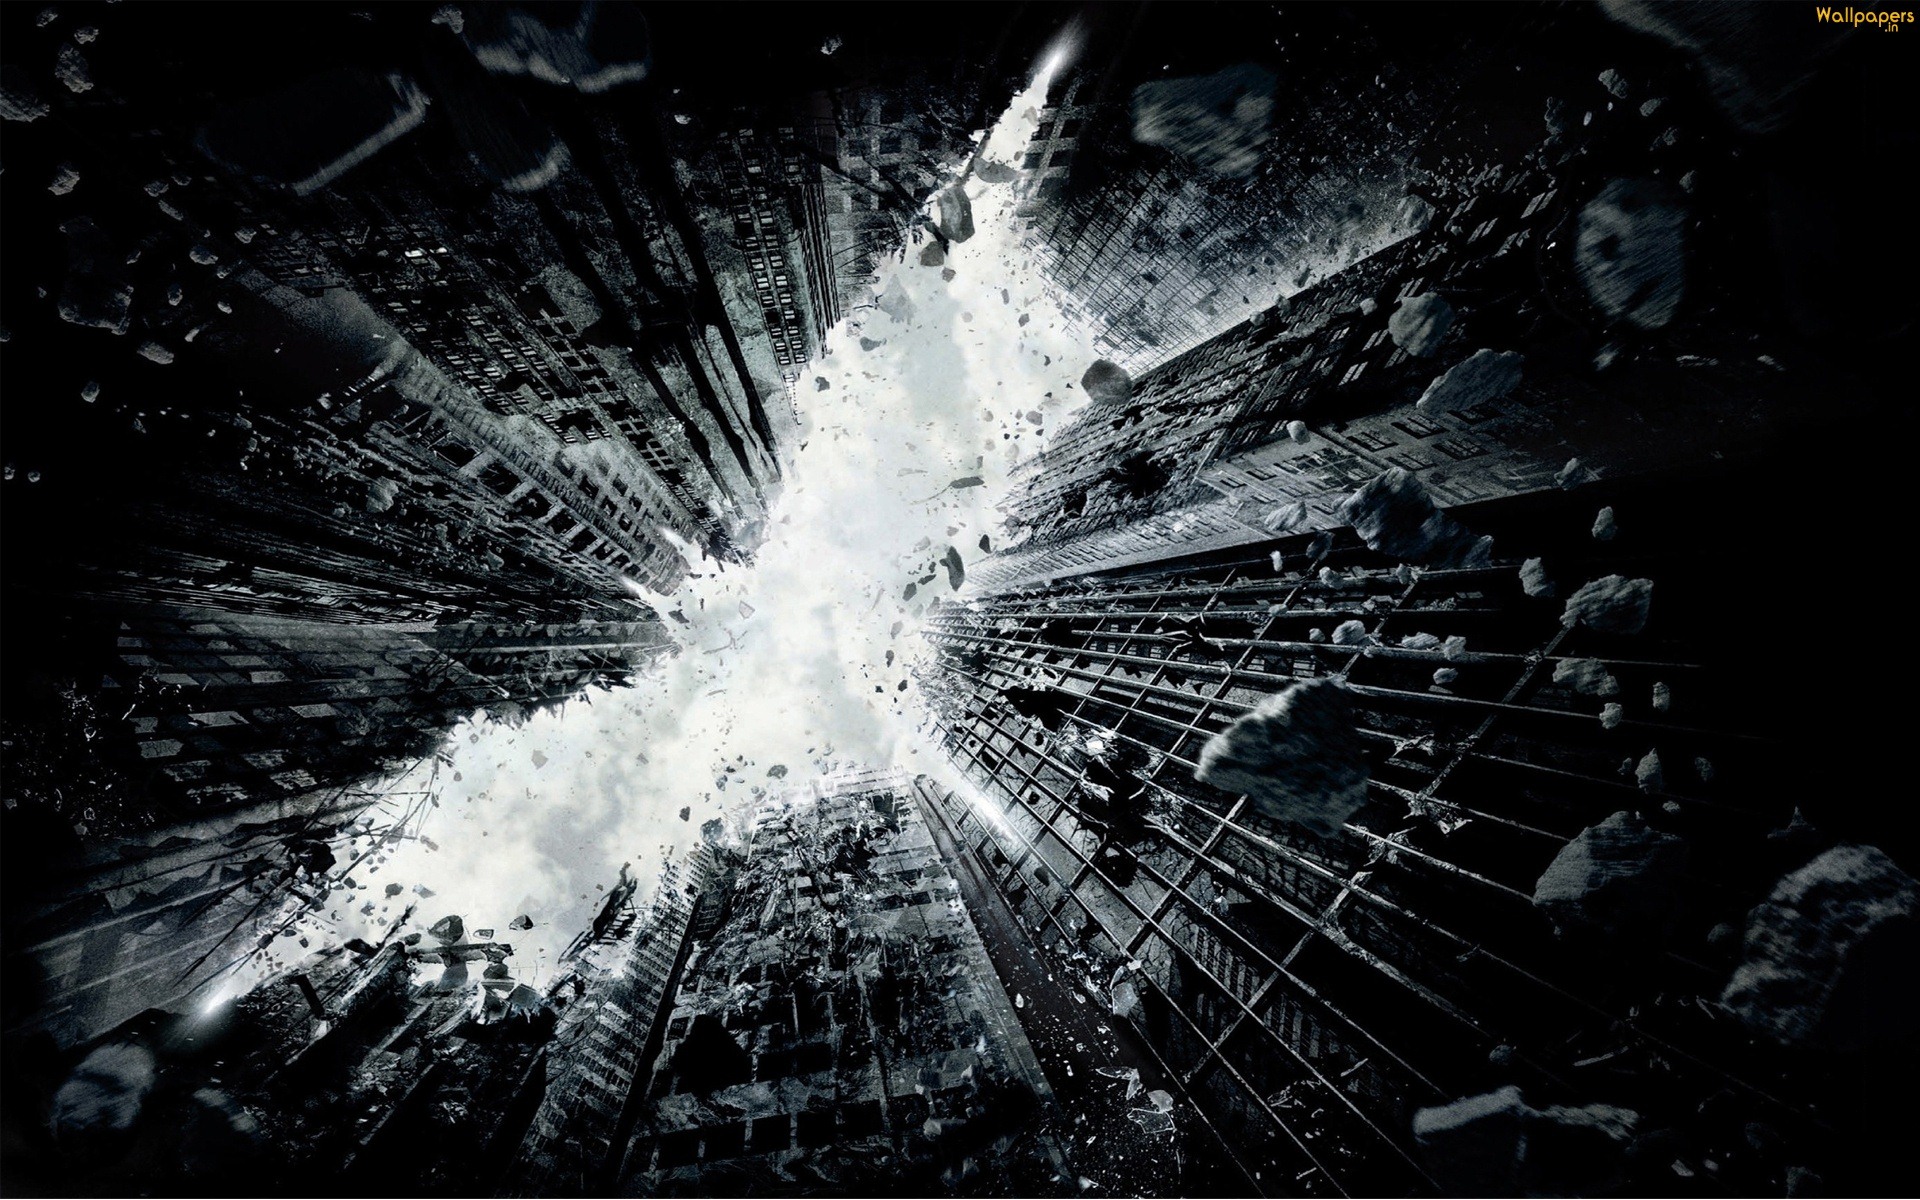 The Dark Knight Rises 2012 HD wallpapers #6 - 1920x1200